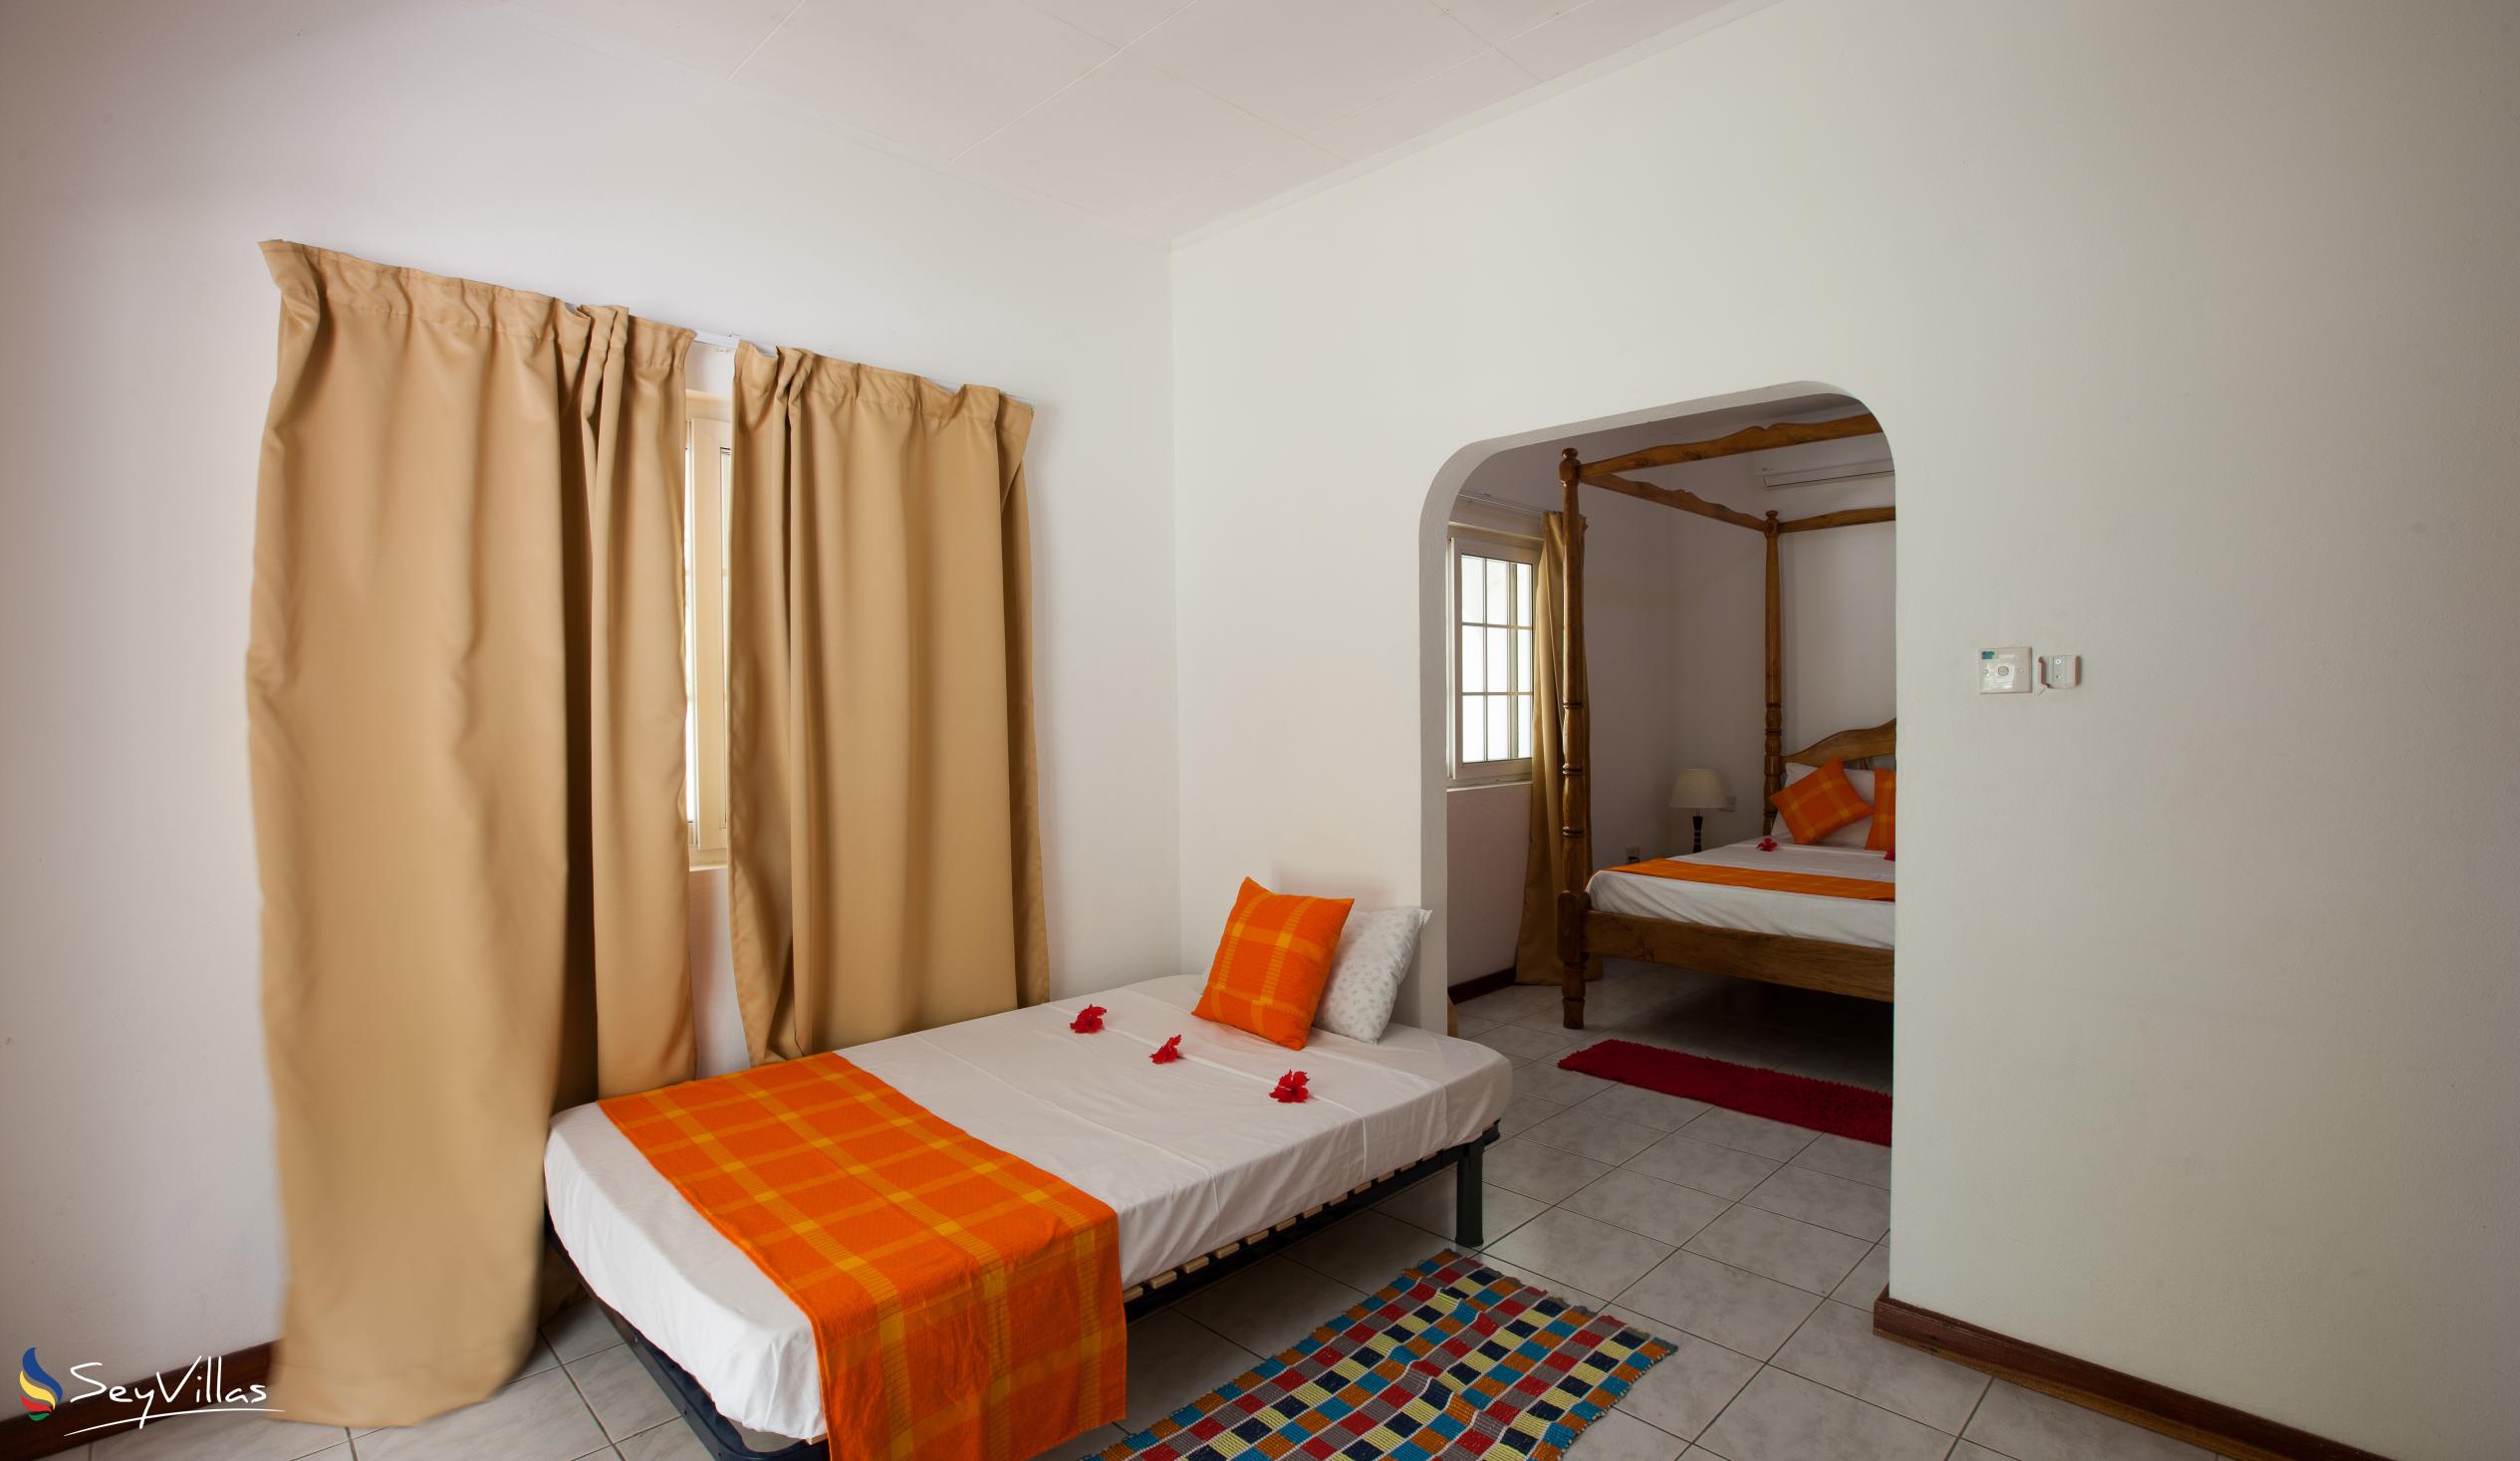 Photo 45: Villa Confort - Family Room 1 - Praslin (Seychelles)